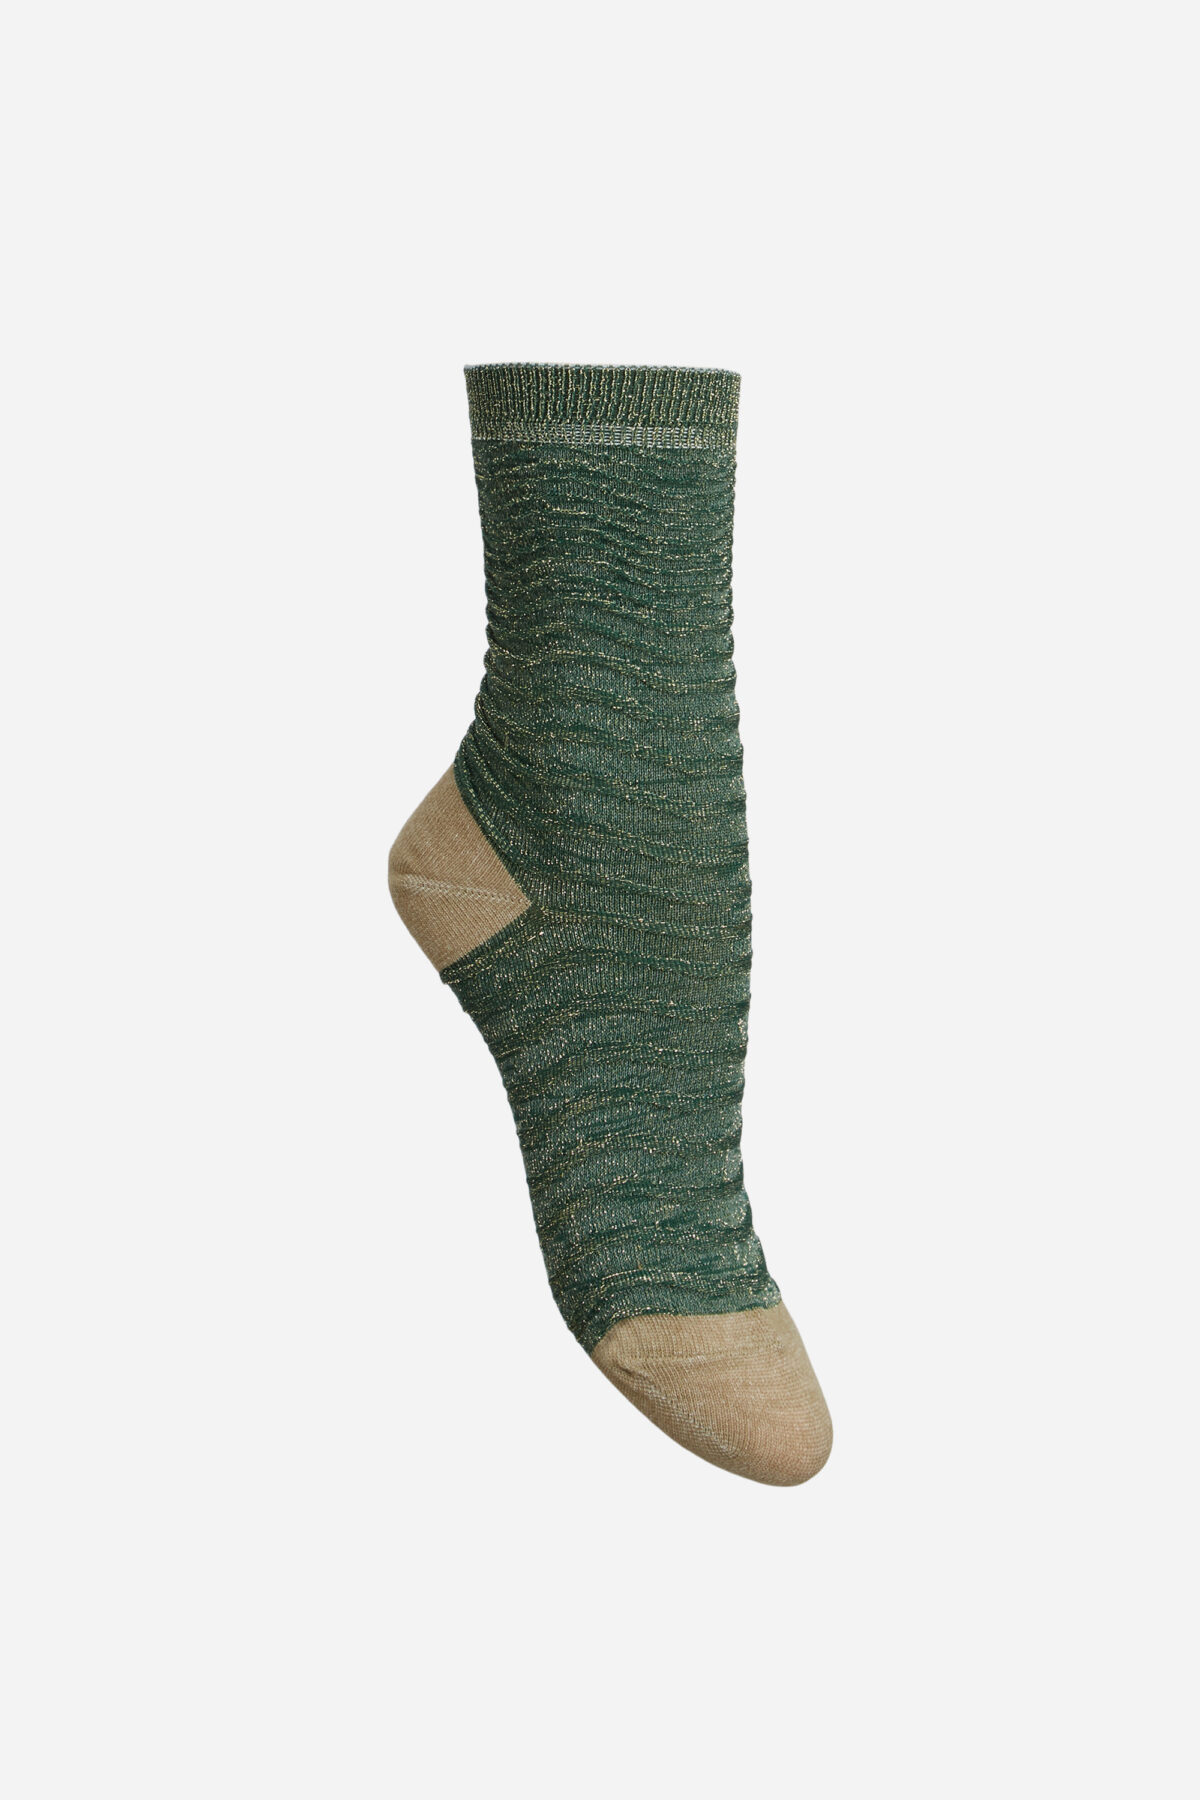 etsee-green-gold-socks-becksondergaard-matchboxathens